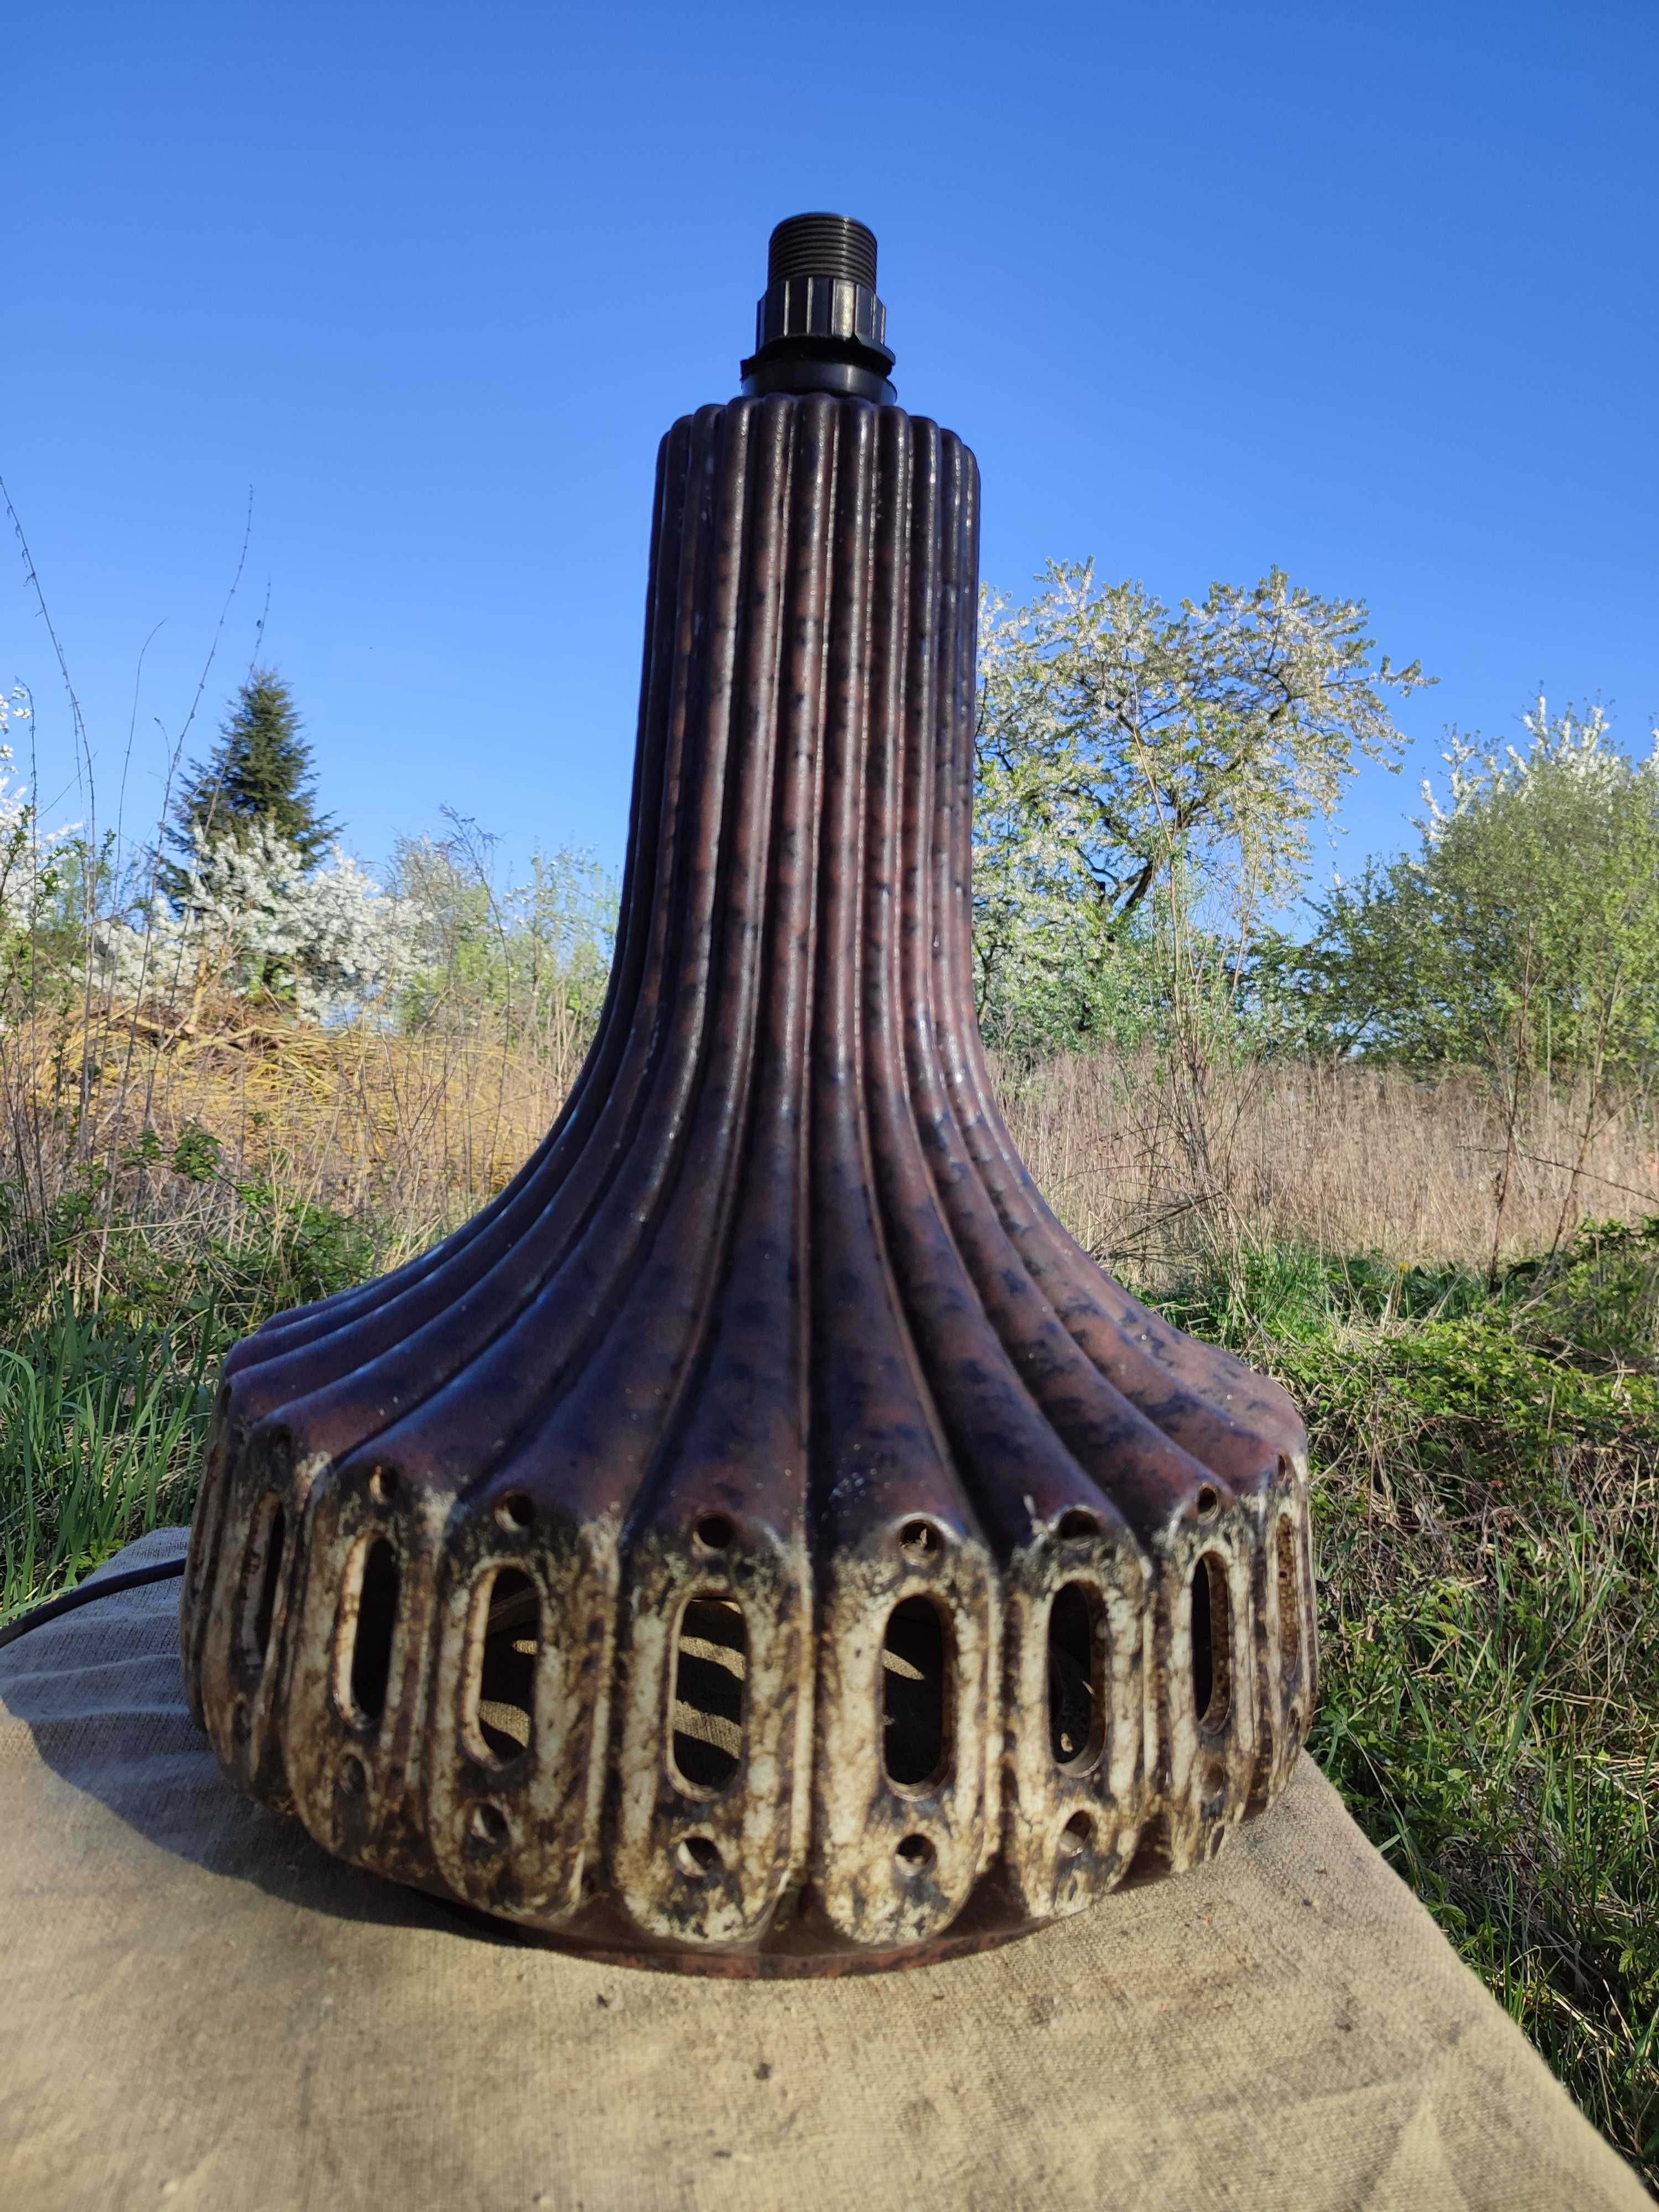 Wielka stara ceramiczna lampa dwupunktowe oświetlenie